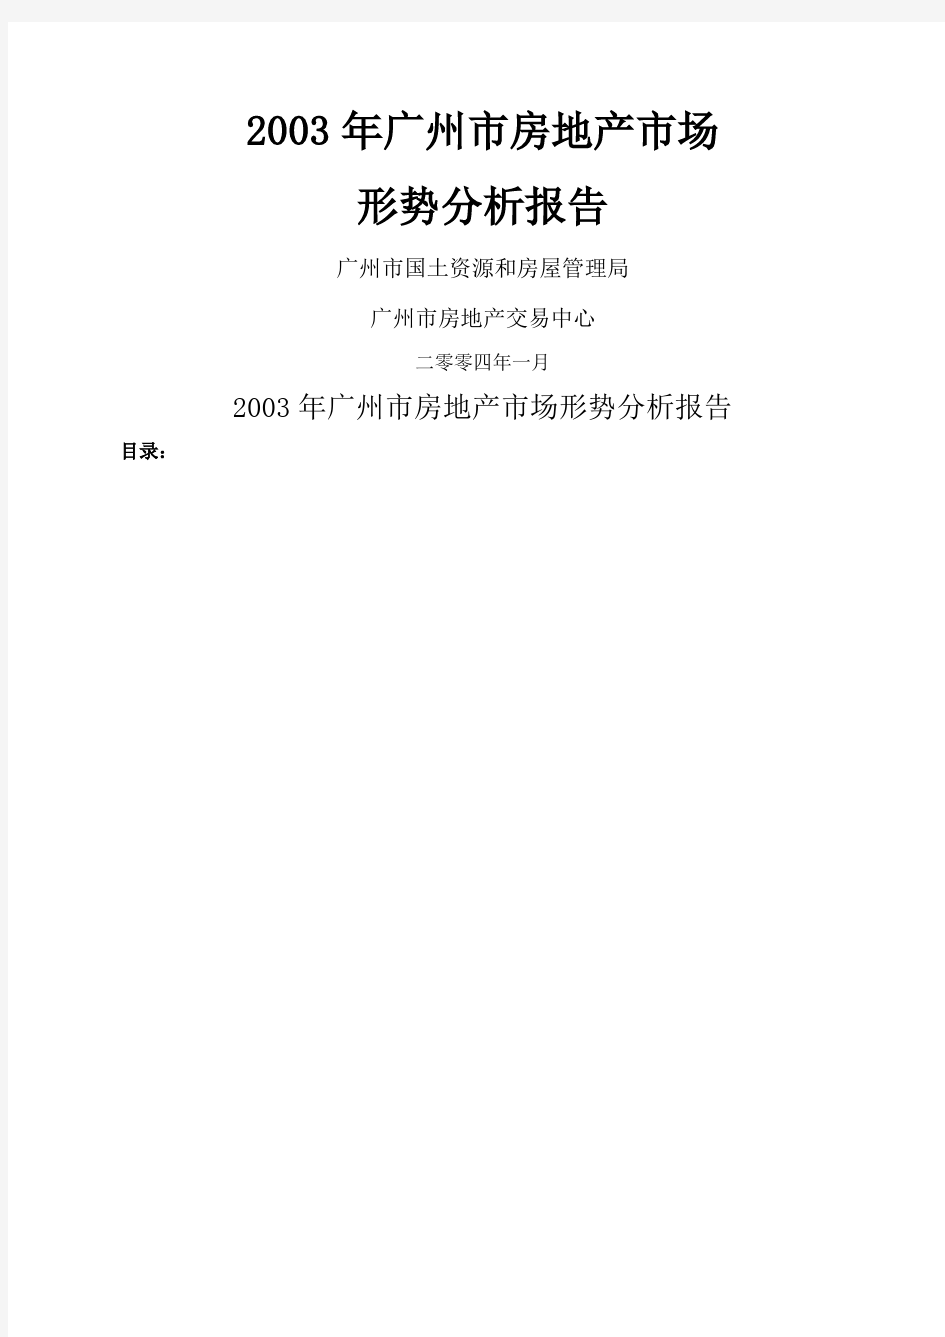 广州市房地产市场形势分析报告